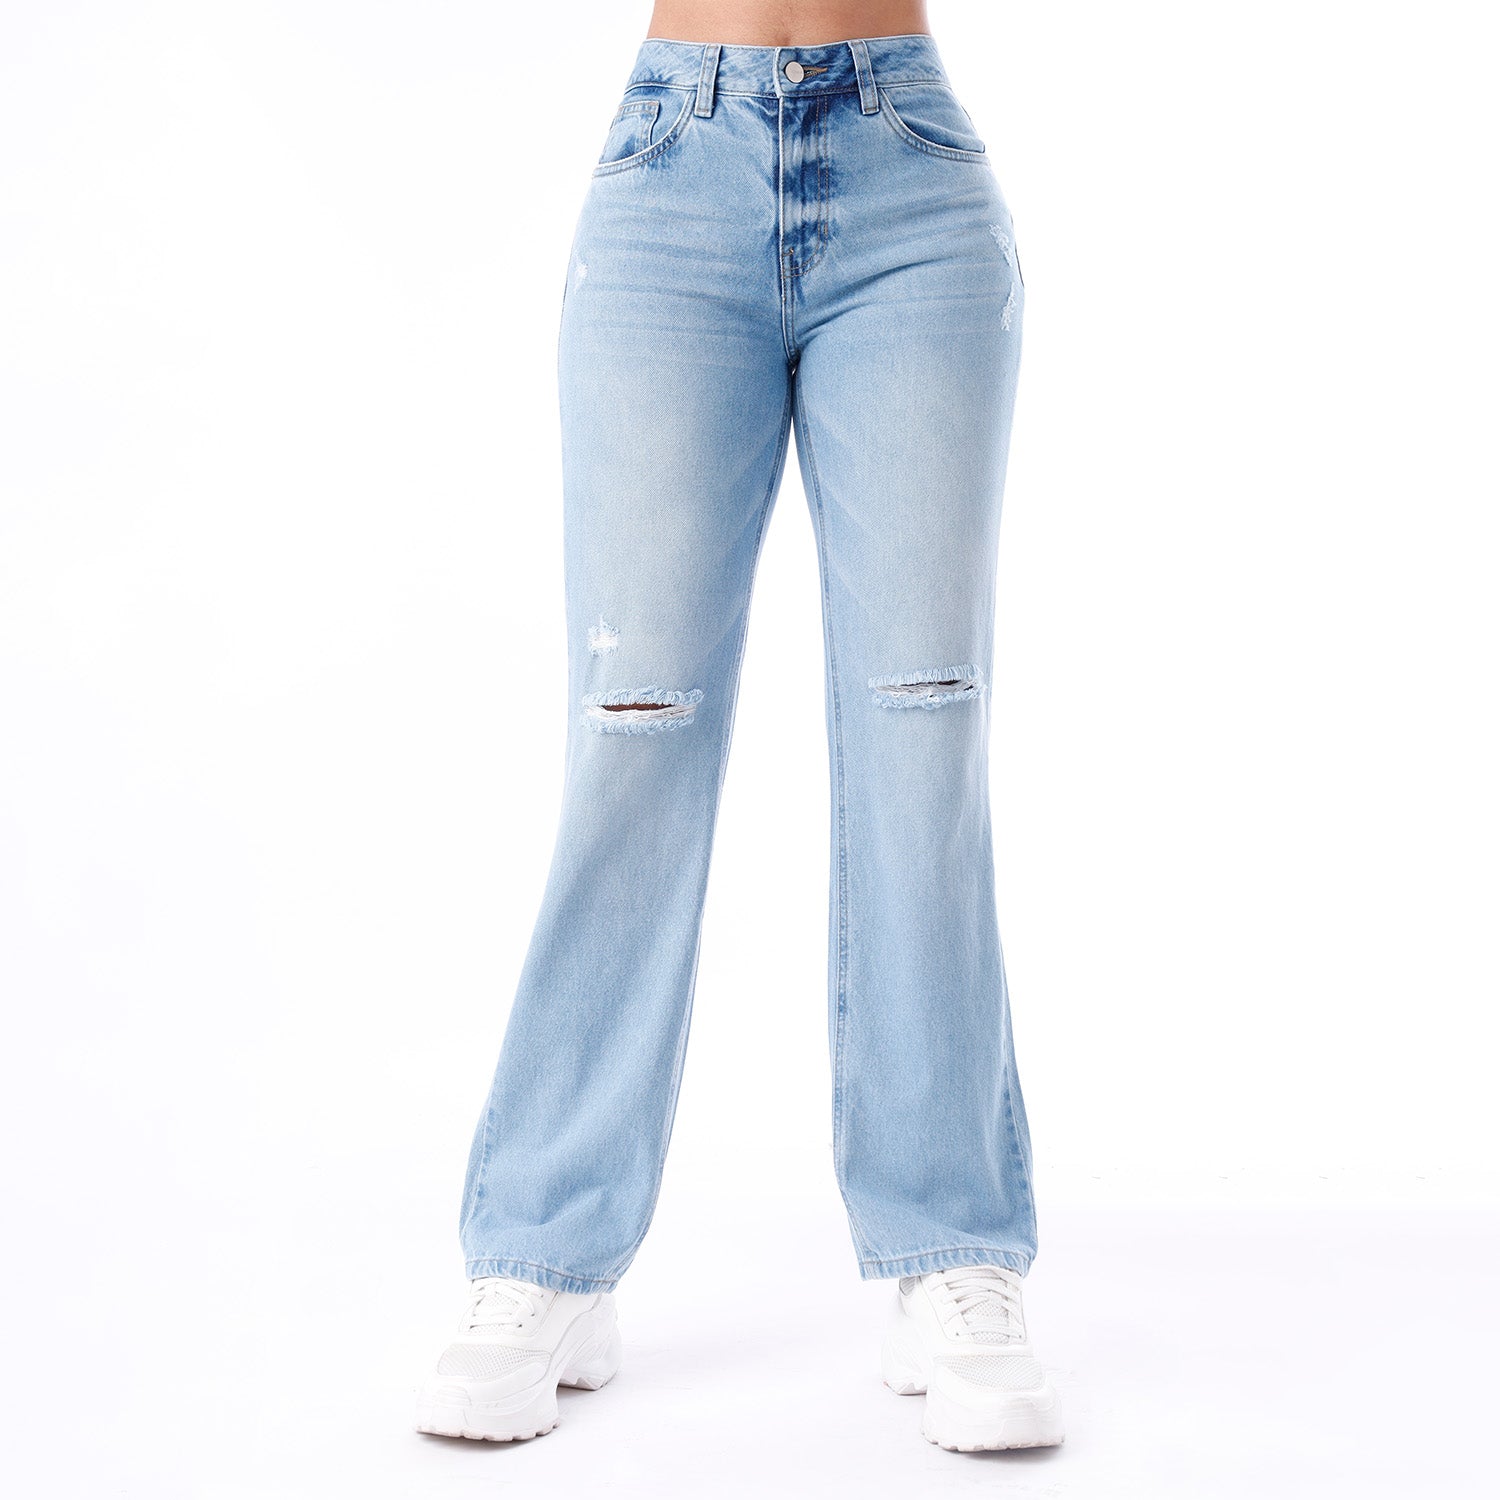 Jeans para Mujer Altosilueta Semiajustado